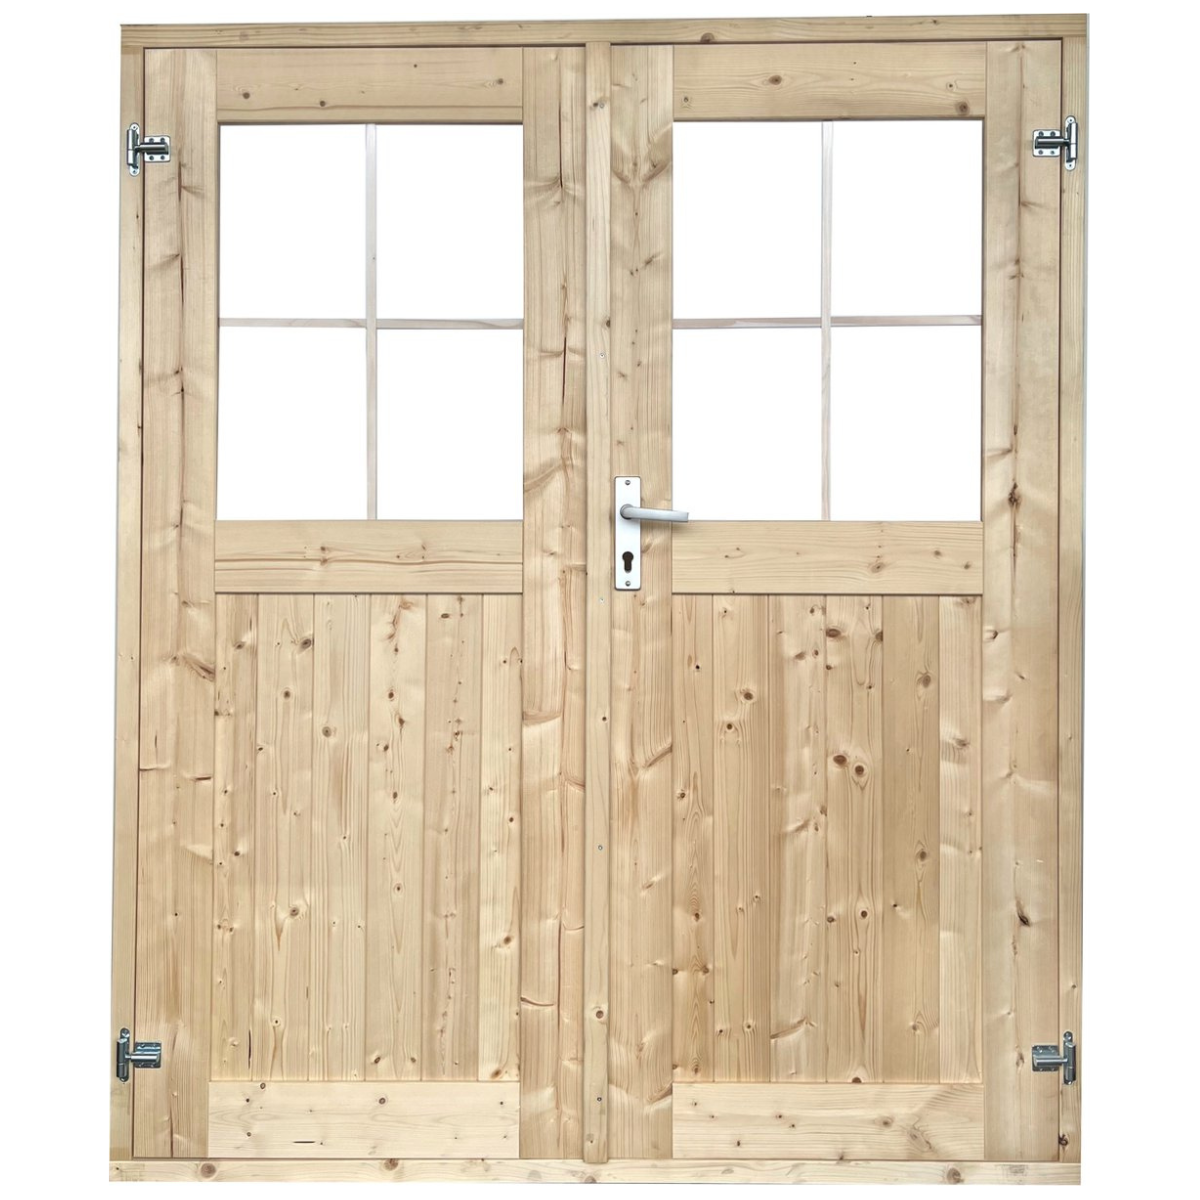 EASTWALL Double log cabin doors pine wood 171 x 180 cm Garden door including hinges and locks, Including frames